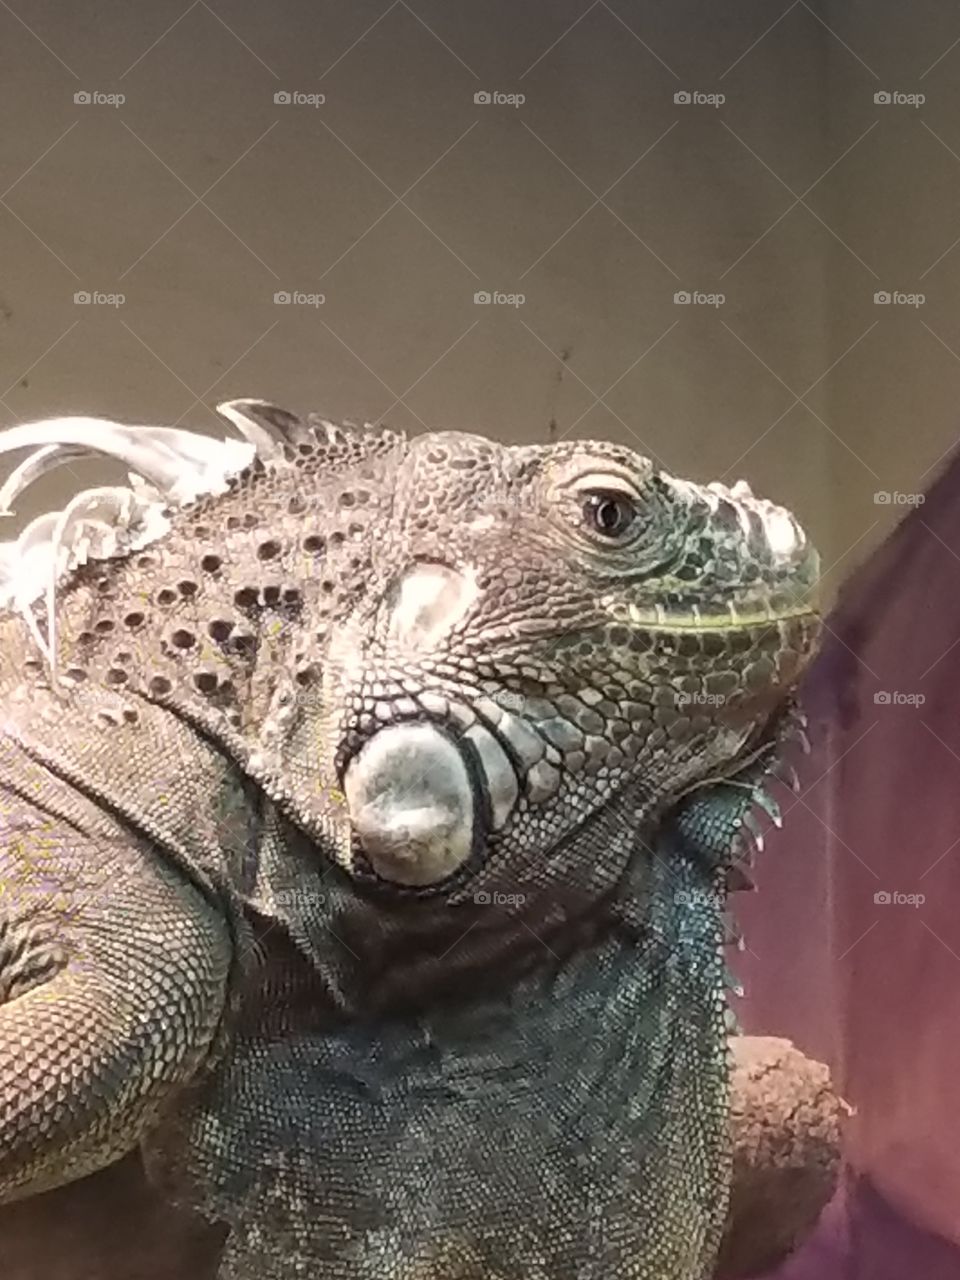 Iguana love!